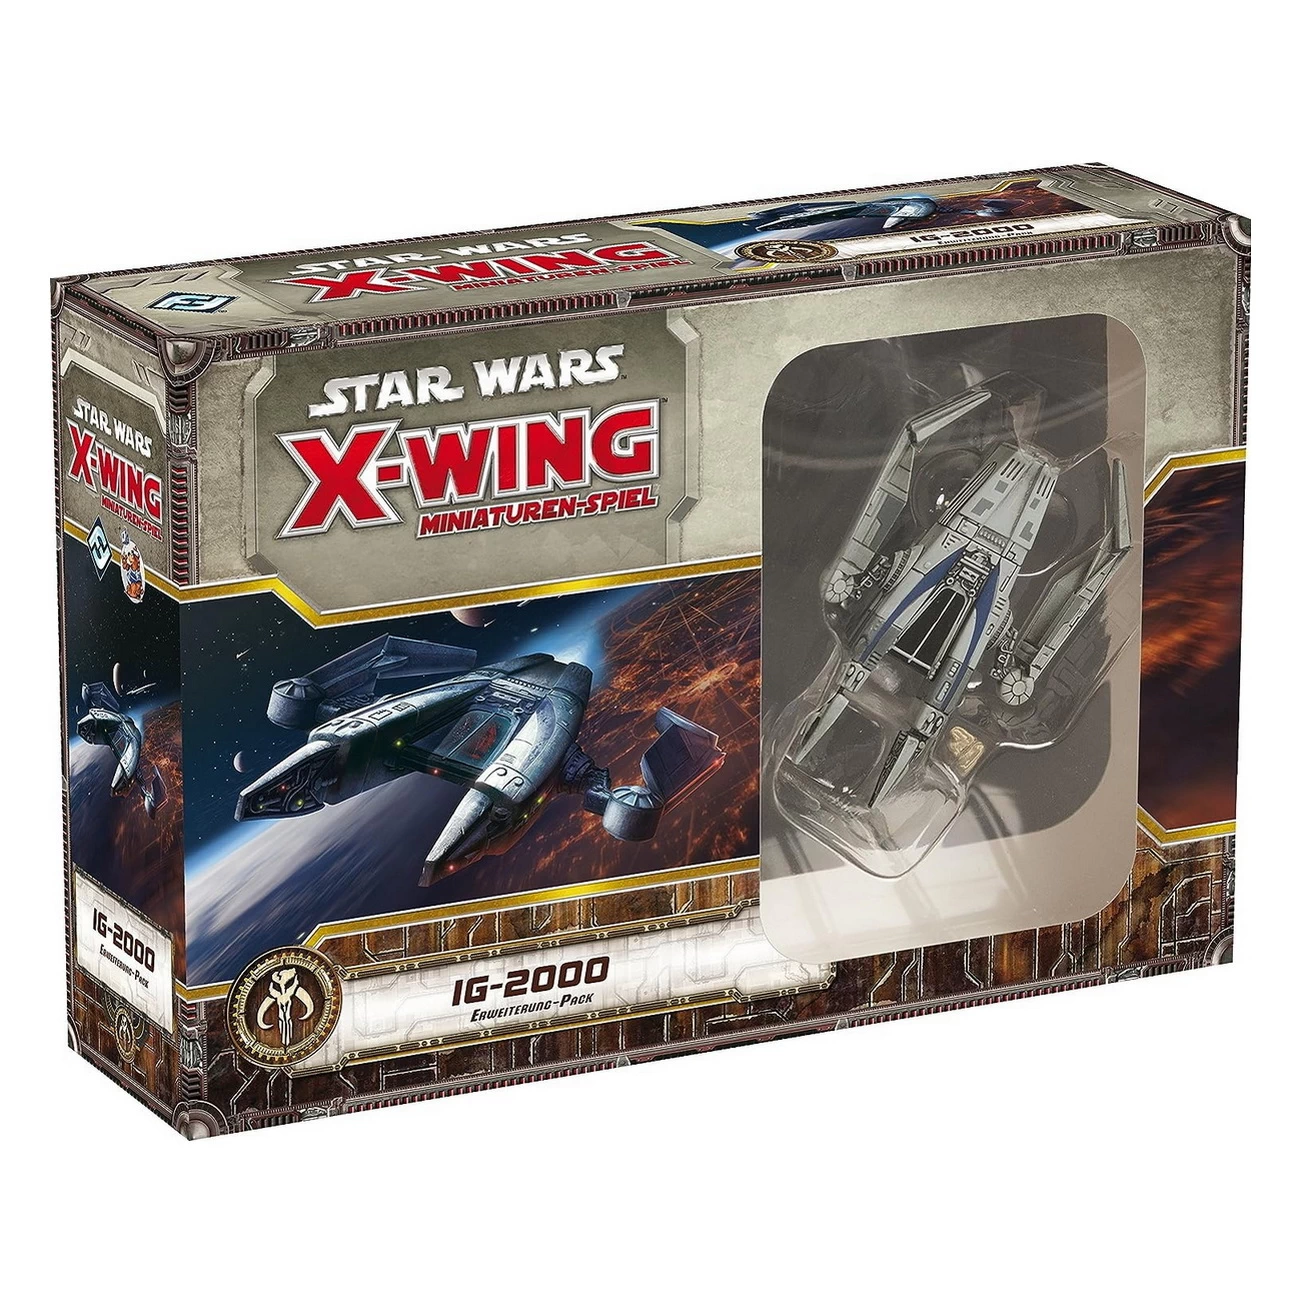 Star Wars X-Wing - IG-2000 Erweiterung-Pack